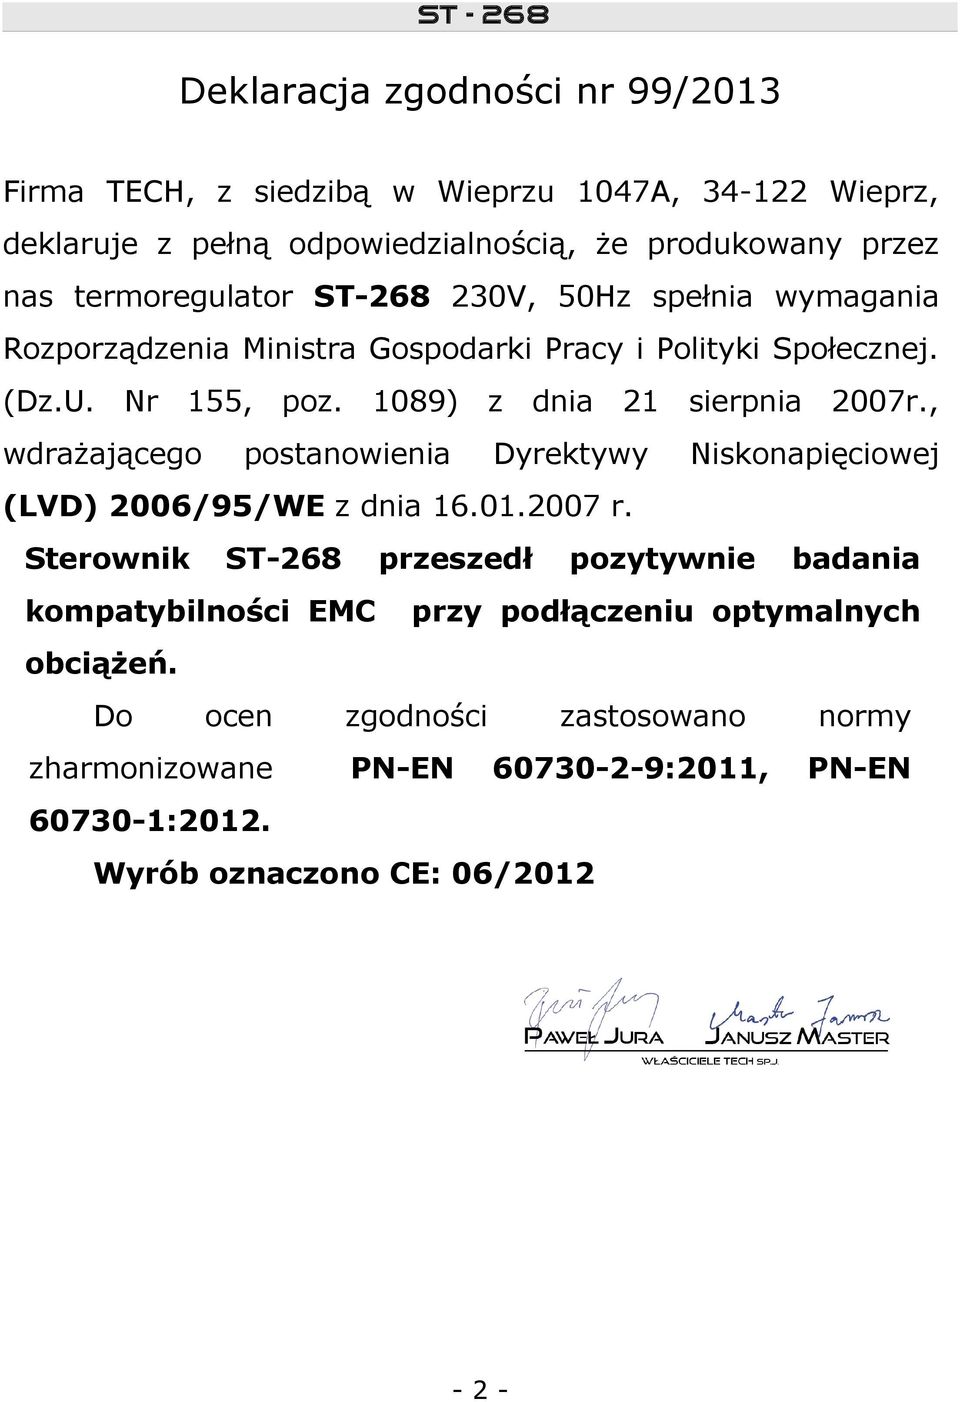 1089) postanowienia z dnia 21 sierpnia 2007r., Dyrektywy Niskonapięciowej (LVD) 2006/95/WE z dnia 16.01.2007 r.